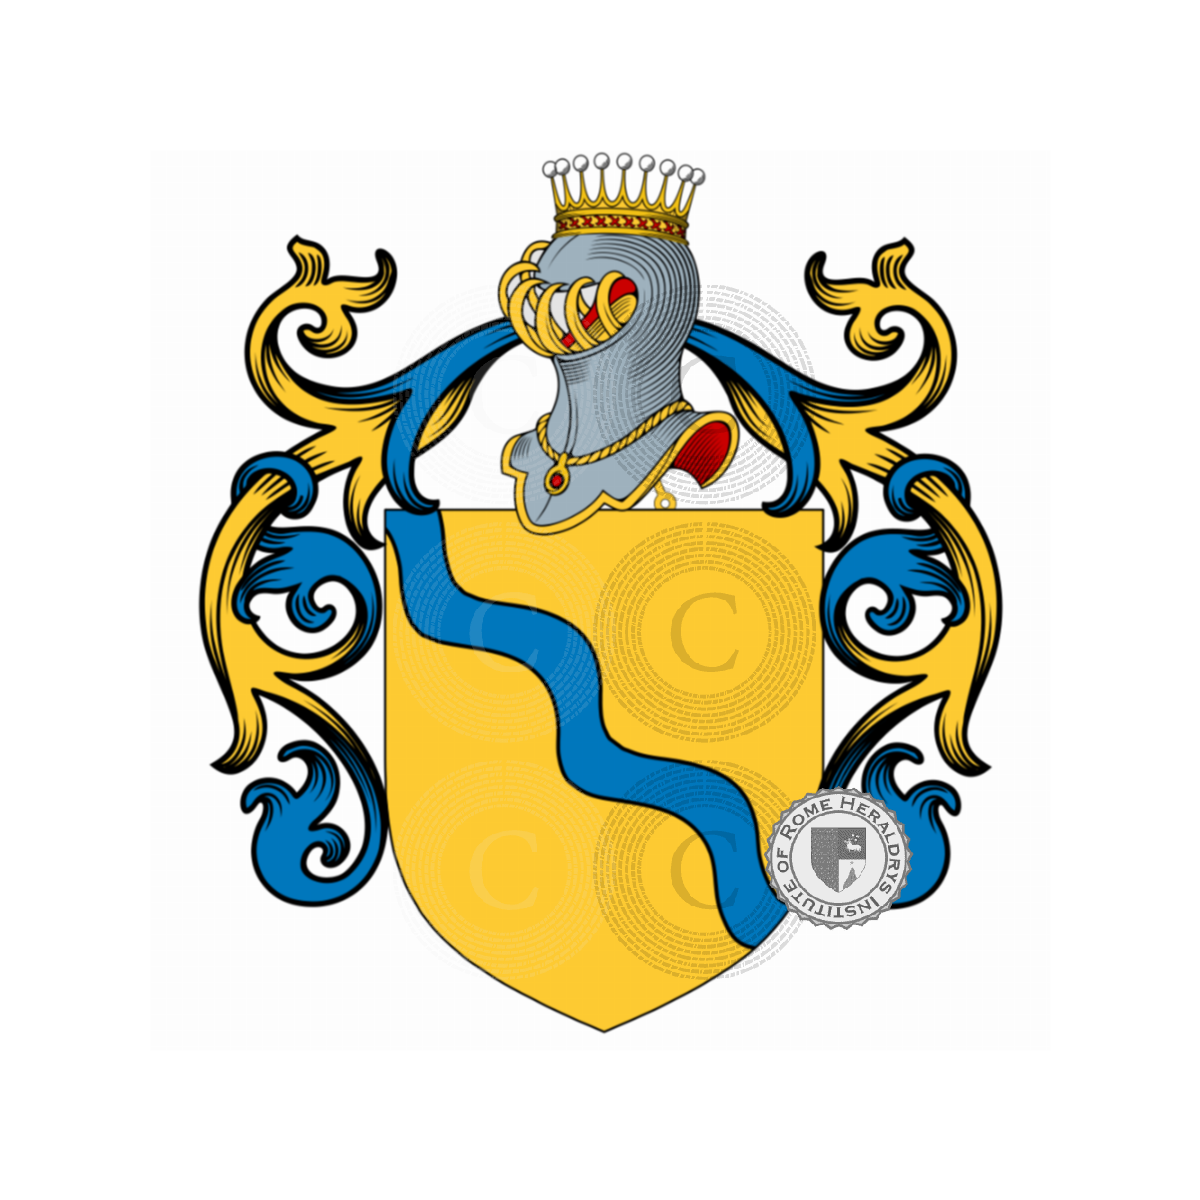 Wappen der FamiliePasolini dall'Onda, dall'Onda,Pasolini dall'Onda,Pasolini Pali,Pasolini Pali dall'Onda